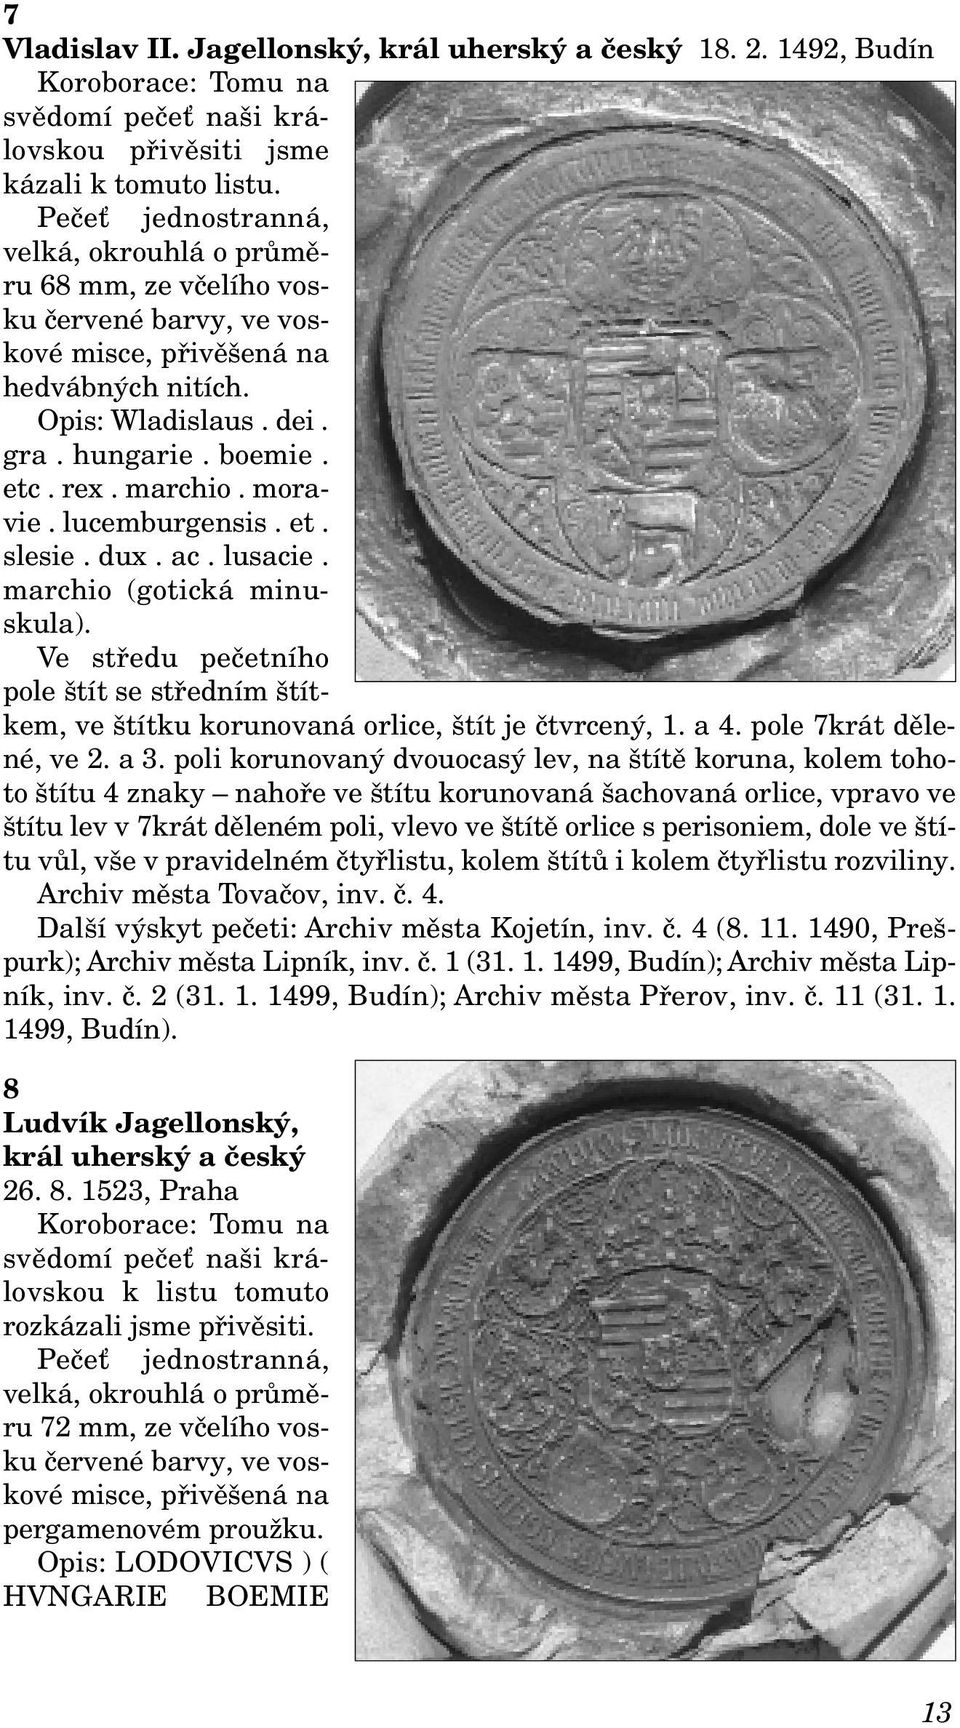 moravie. lucemburgensis. et. slesie. dux. ac. lusacie. marchio (gotická minuskula). Ve středu pečetního pole štít se středním štítkem, ve štítku korunovaná orlice, štít je čtvrcený, 1. a 4.